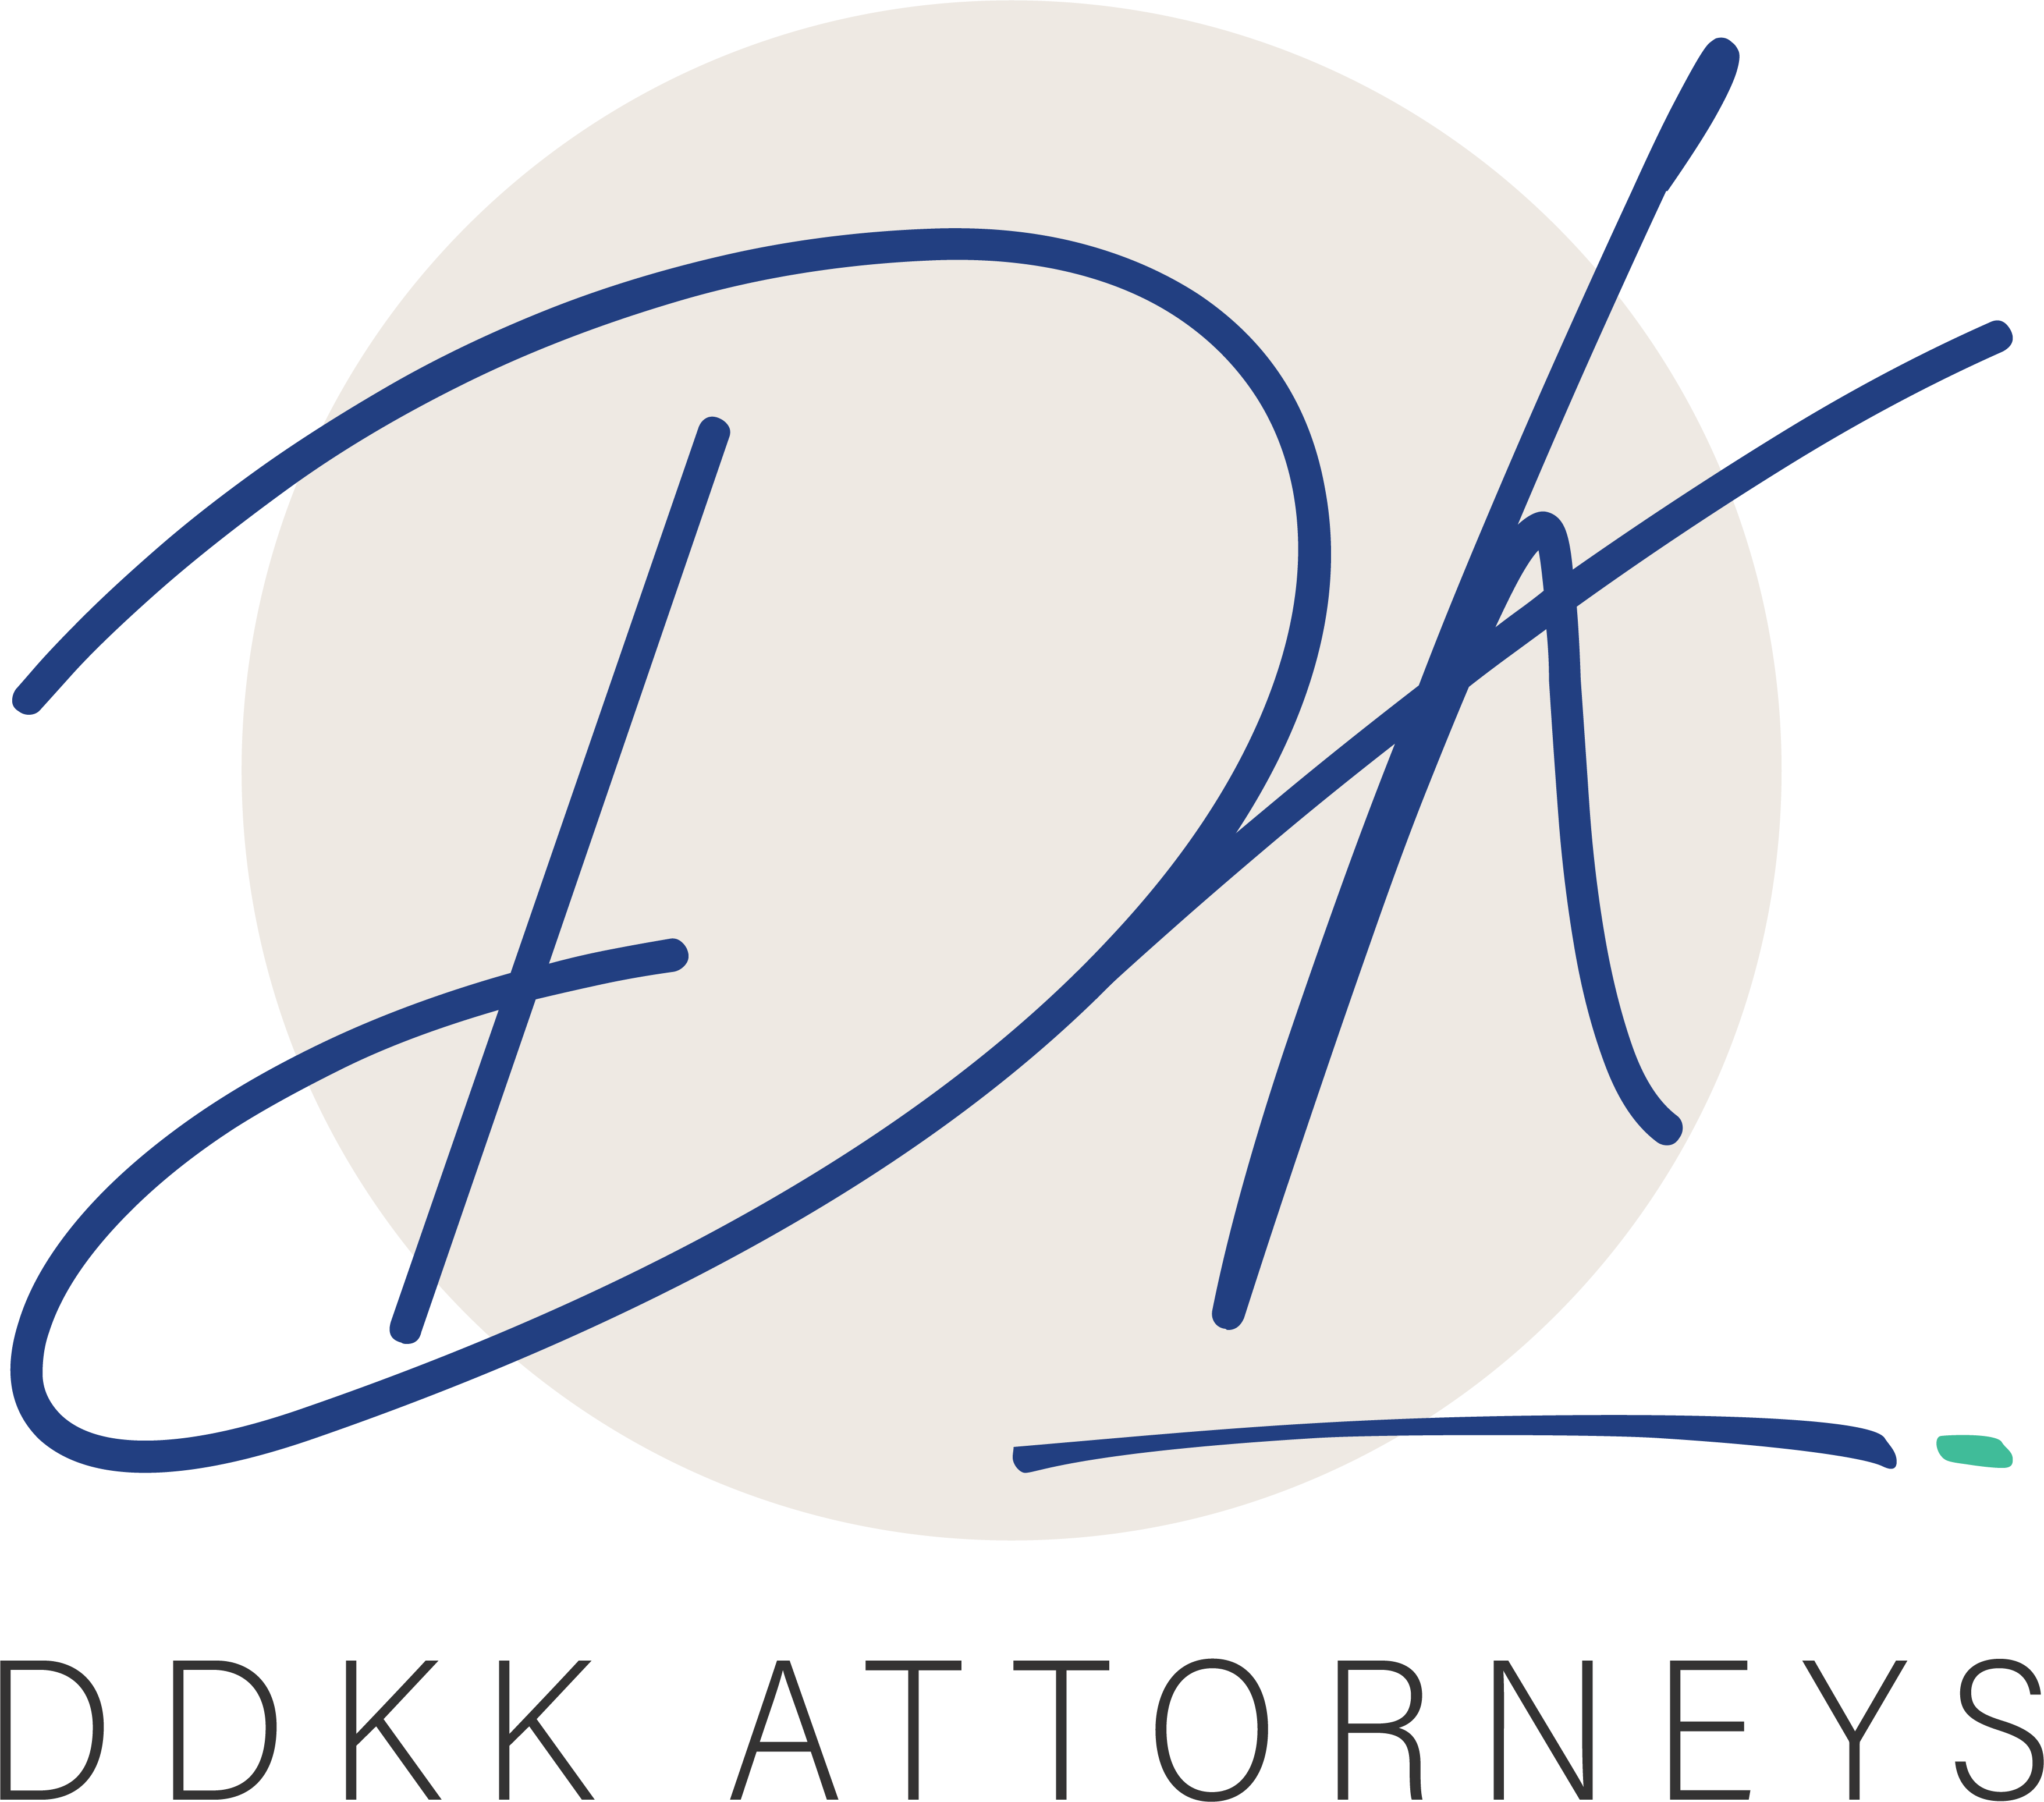 DDKK Attorneys inc.